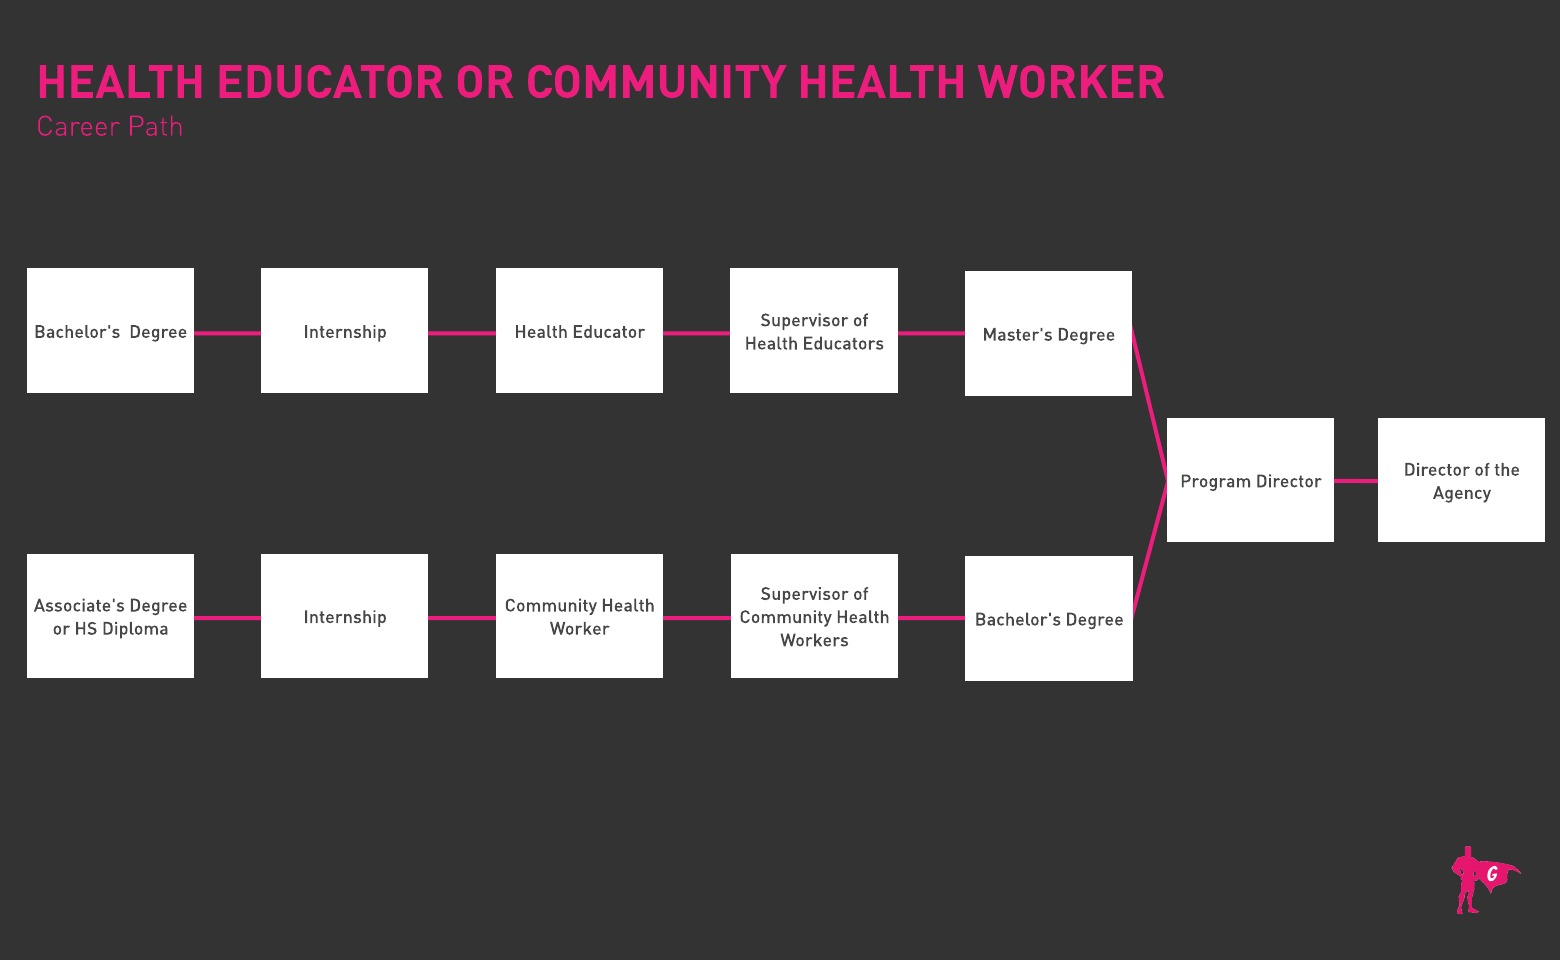 健康教育工作者和社区卫生工作者的发展路线图